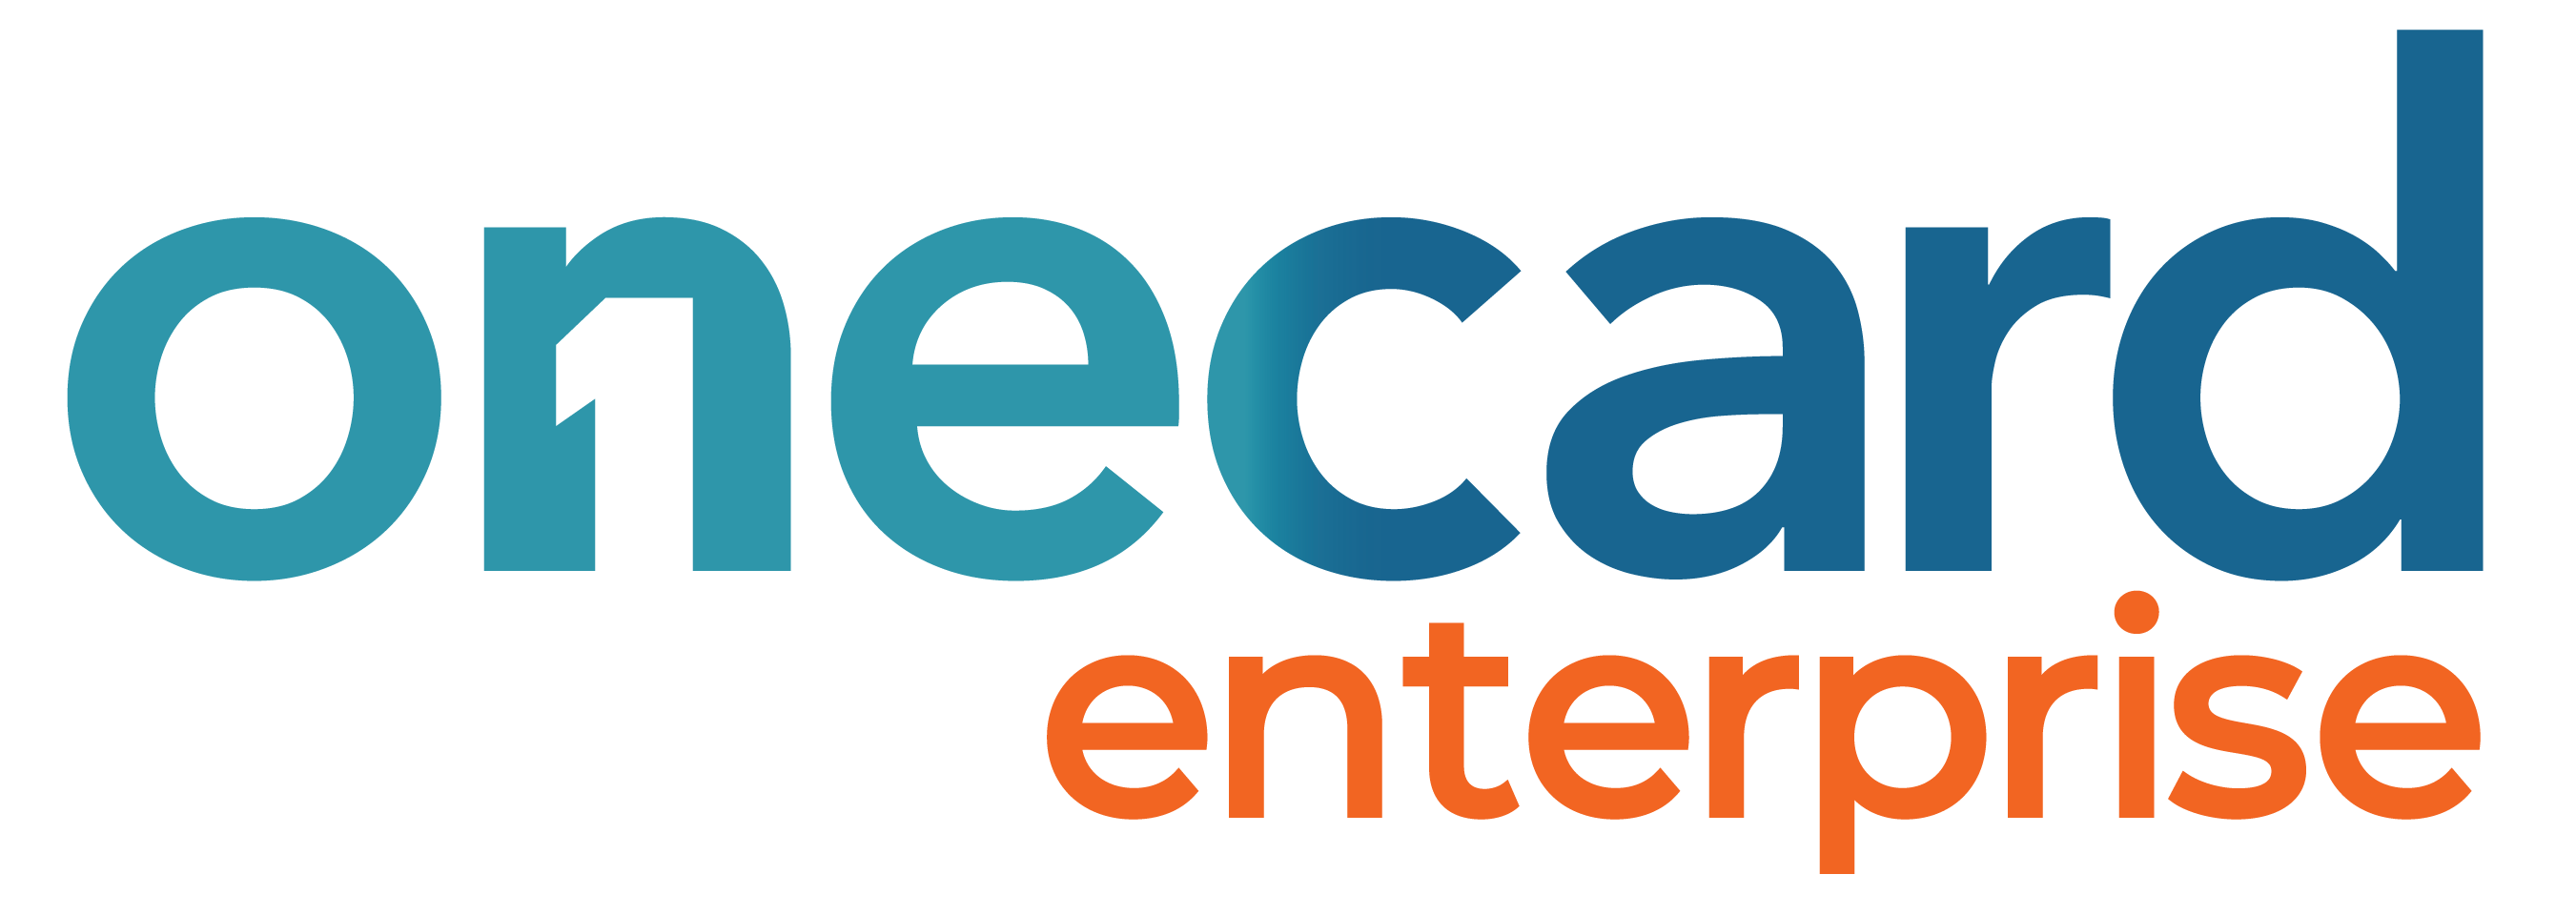 Onecard Enterprise logo